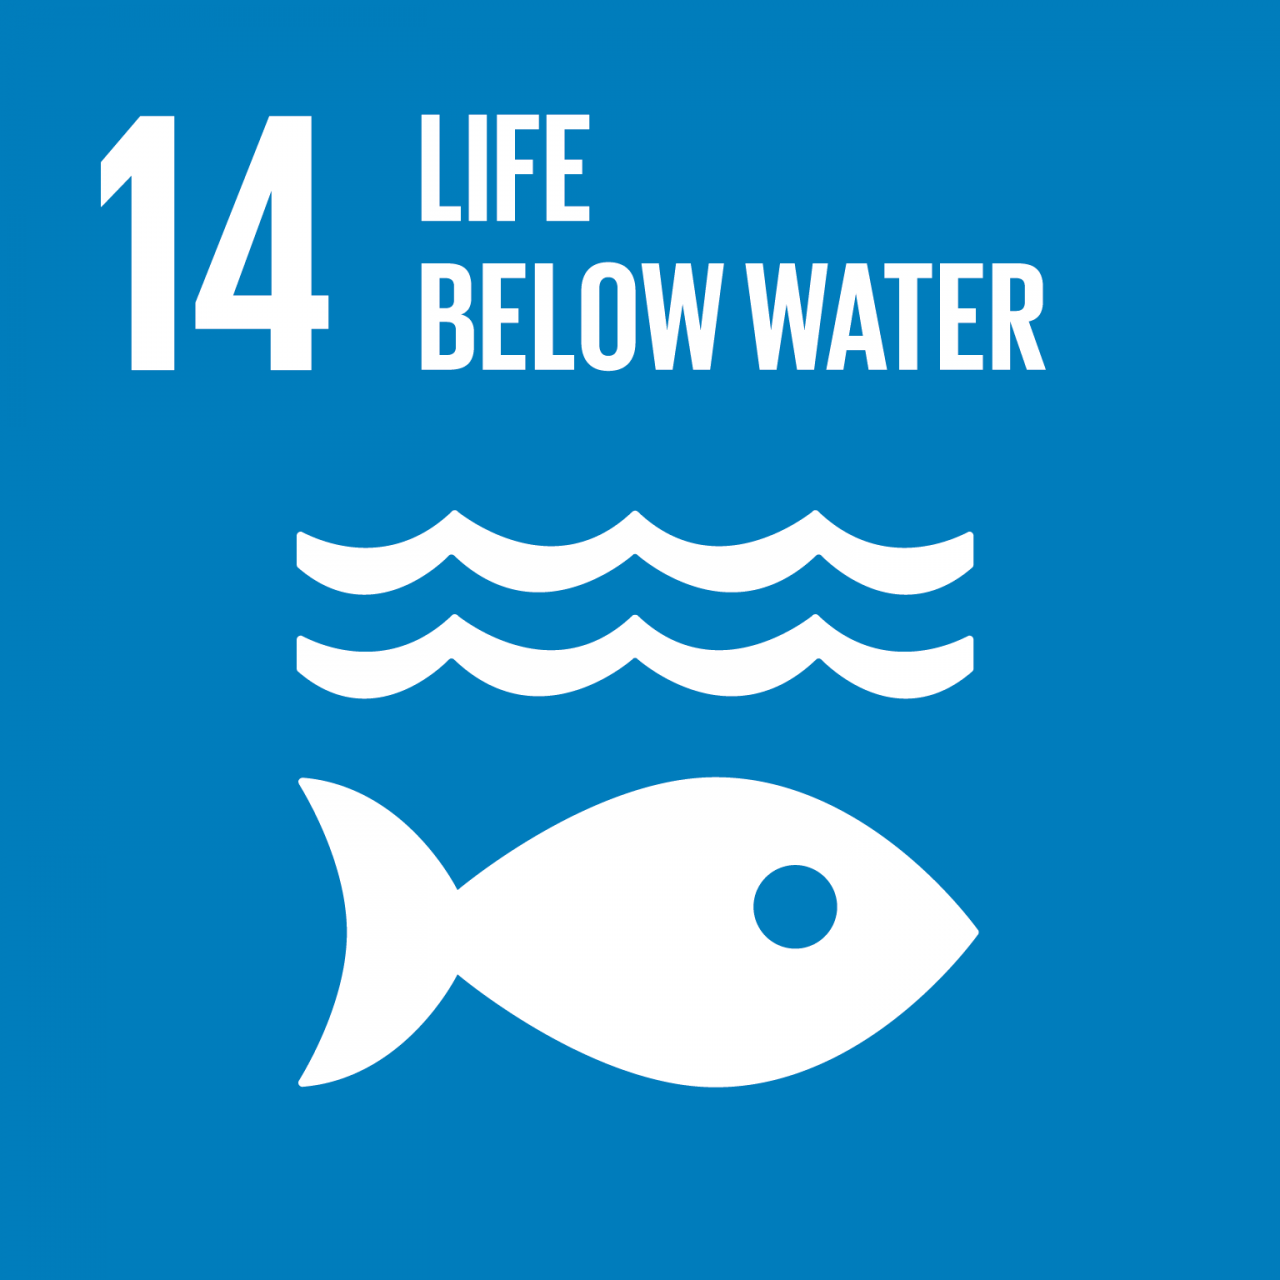 Agenda 2030: gli obiettivi ambientali di sviluppo sostenibile. SDG 14 – Vita sott’acqua